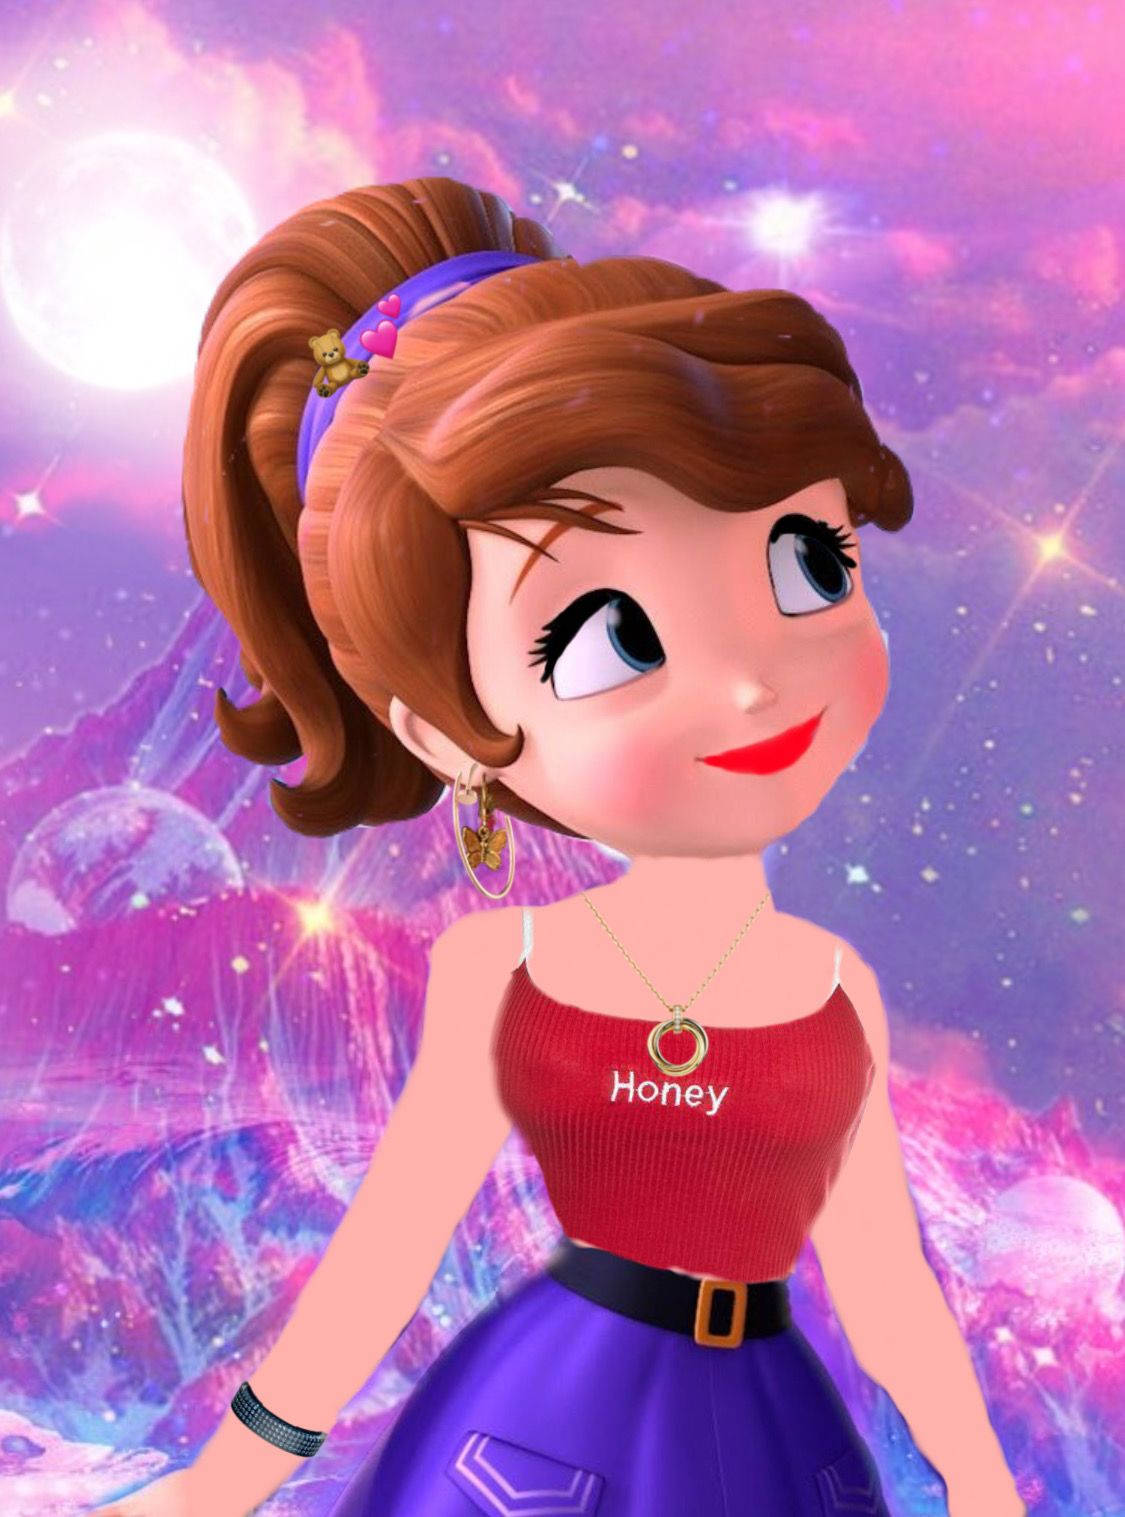 Disney Princess Sofia In Sporty Look Background